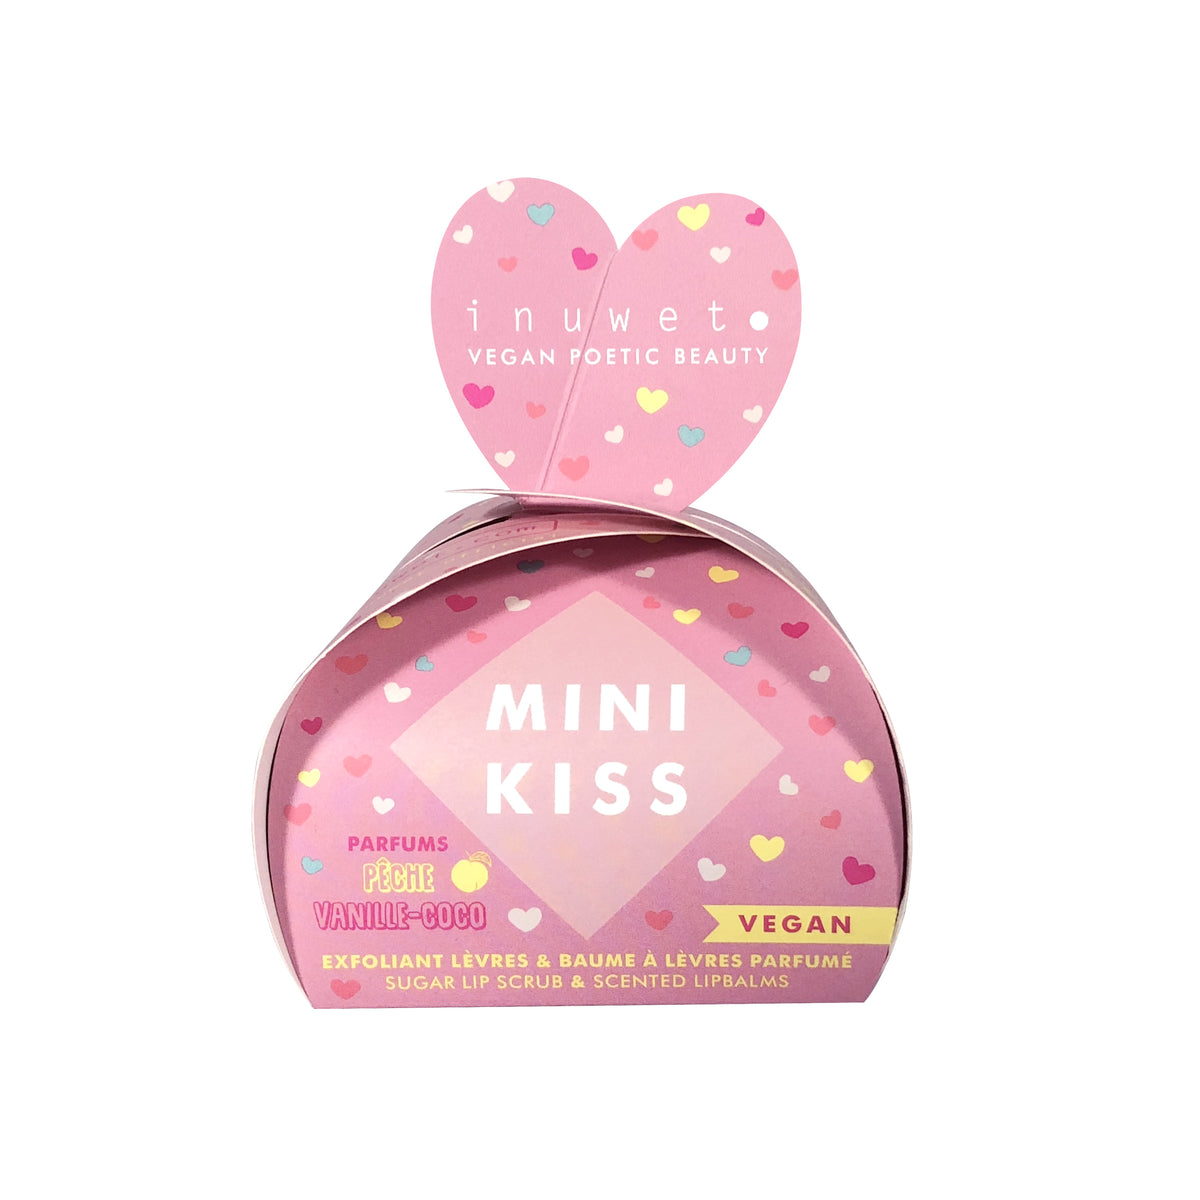 MINI KISS rose